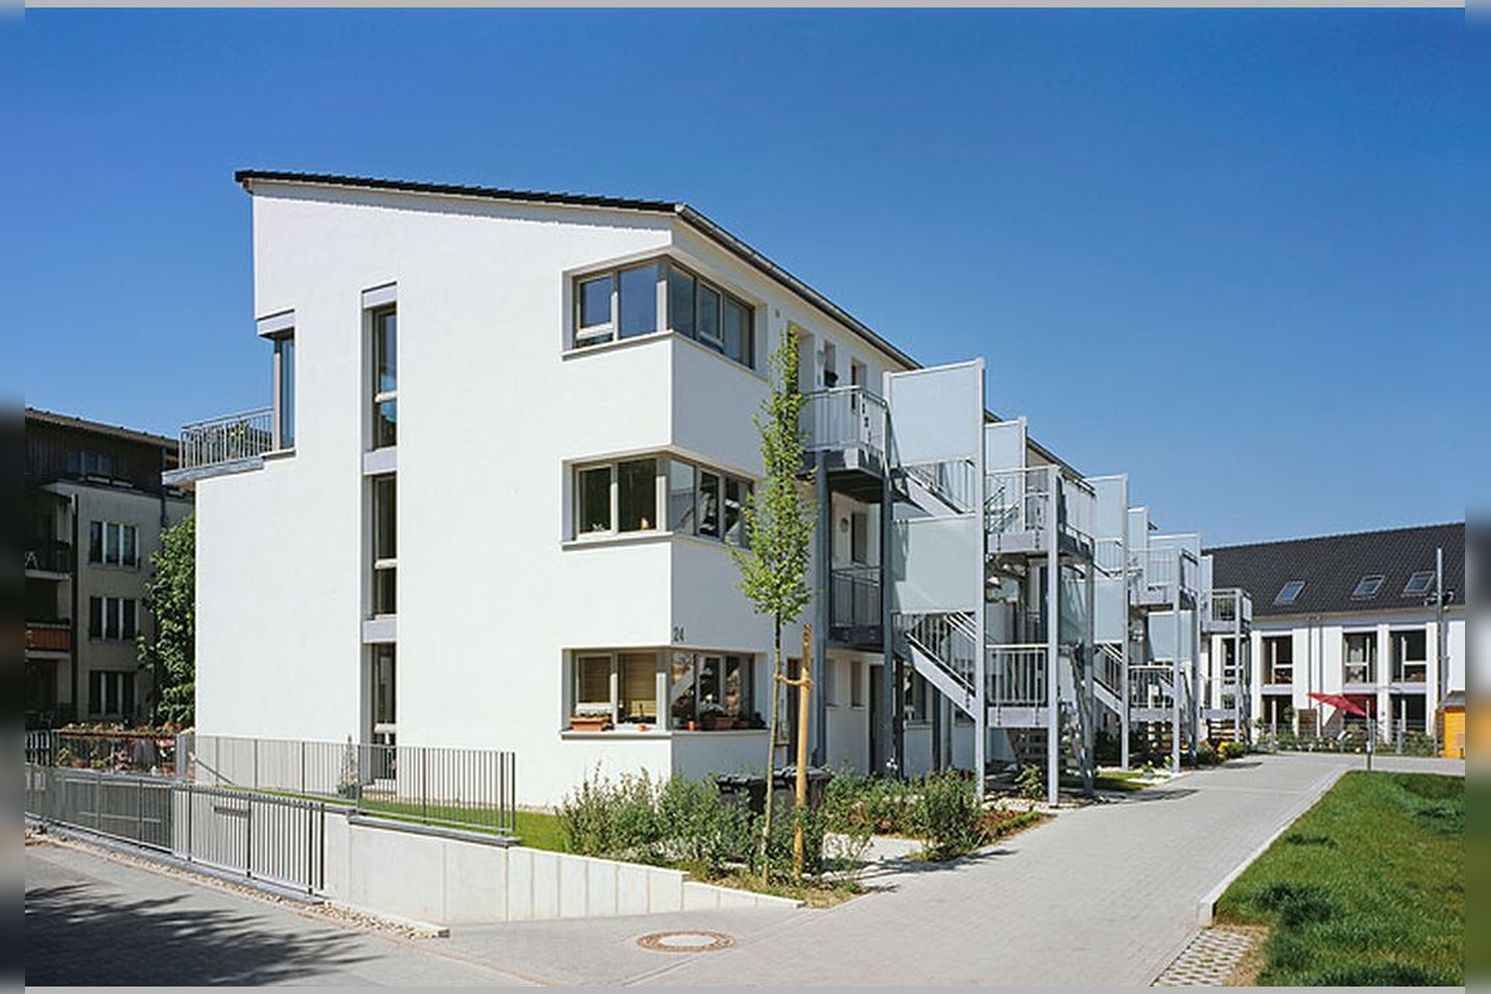 Immobilie Nr.D.dorf-Itter 100 - Reihenhäuser, Doppelhaushälften, Eigentumswohnungen auf Erbpacht - Bild 13.jpg